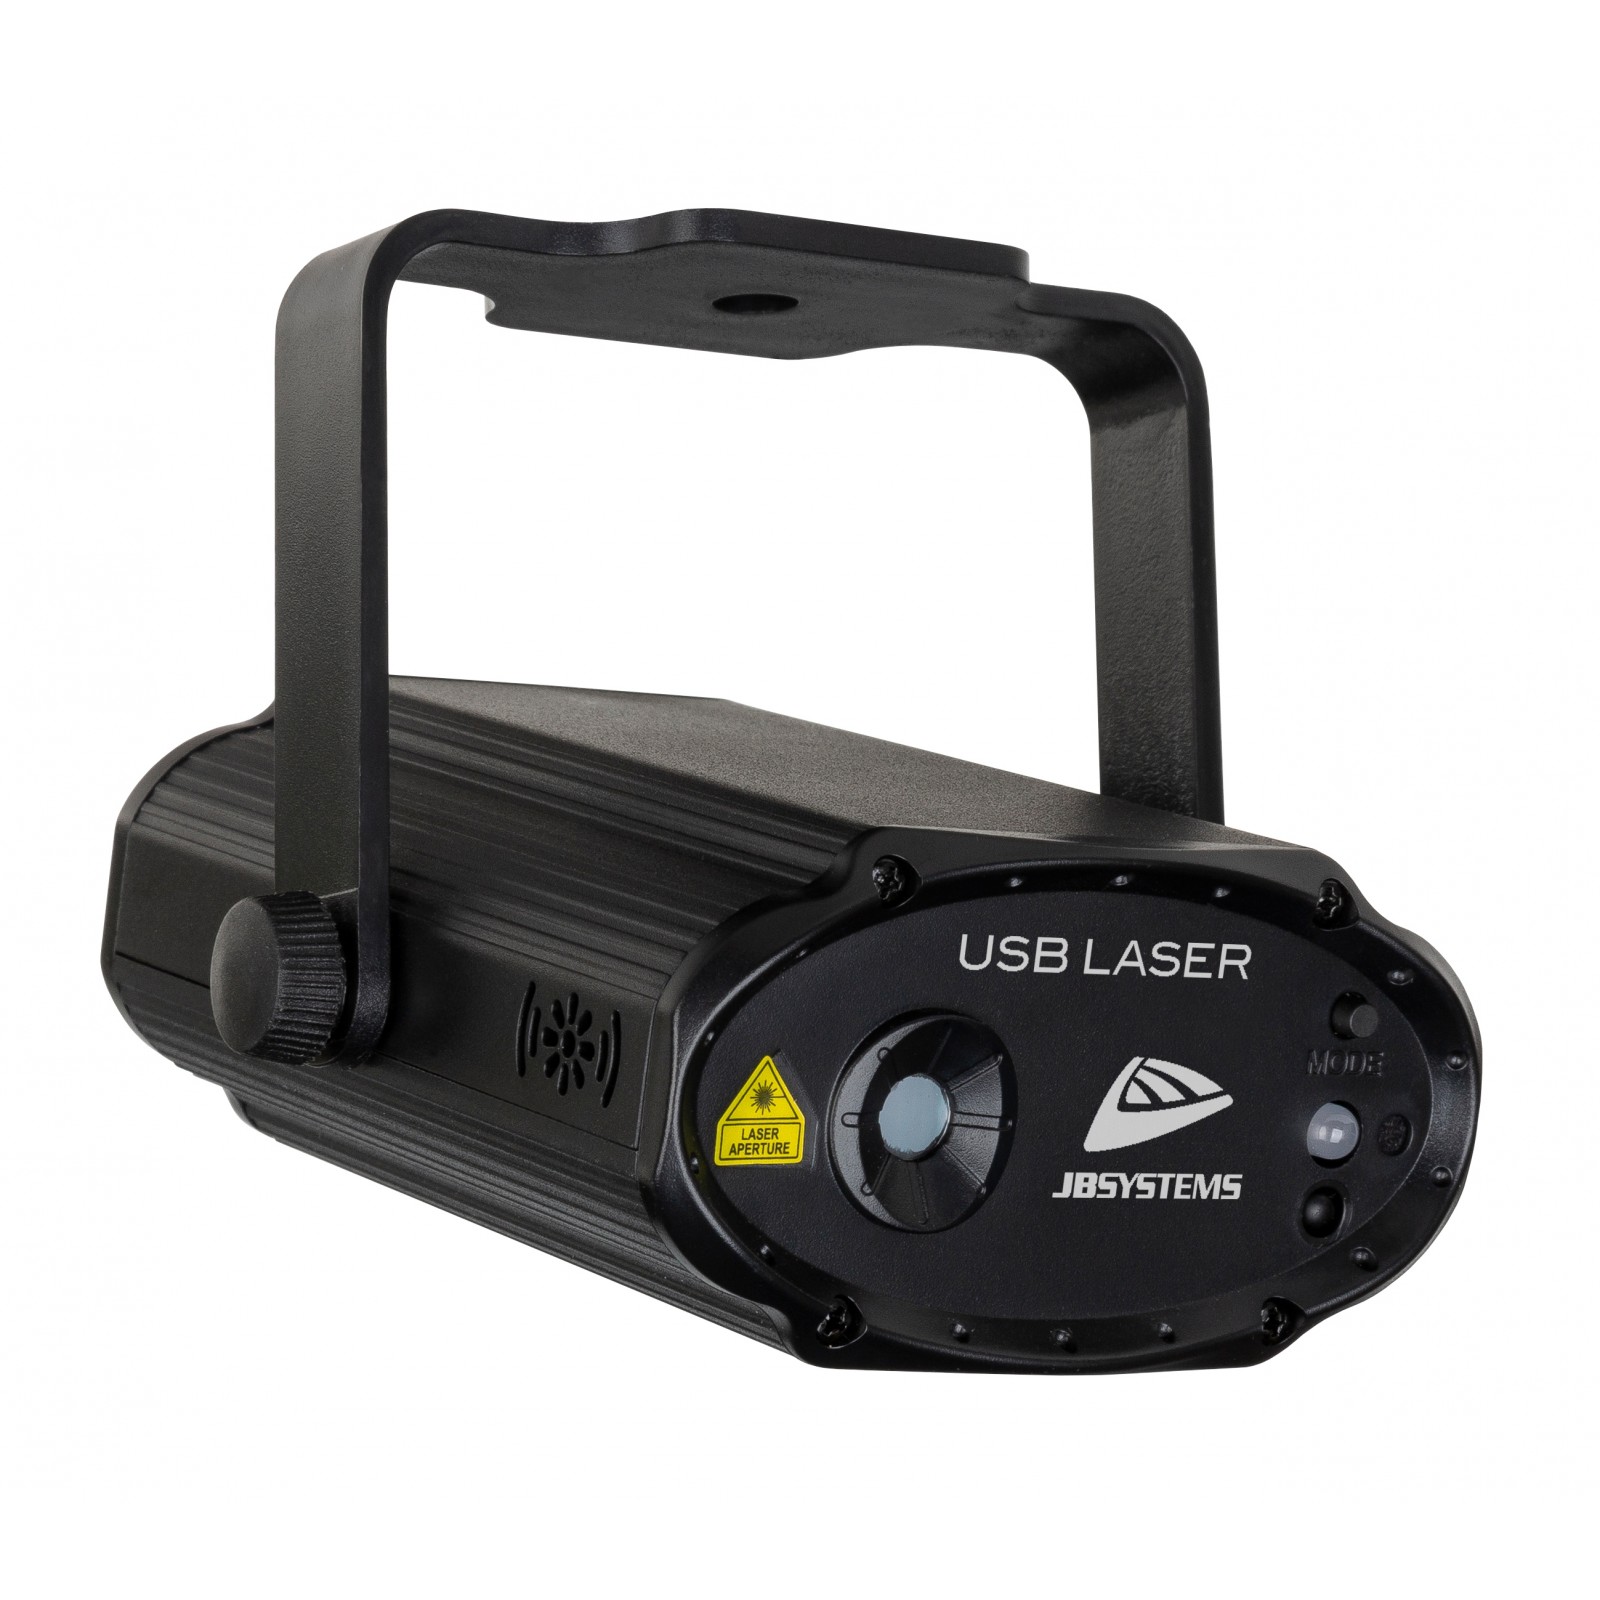 USB LASER, effet laser 5V USB rouge/vert